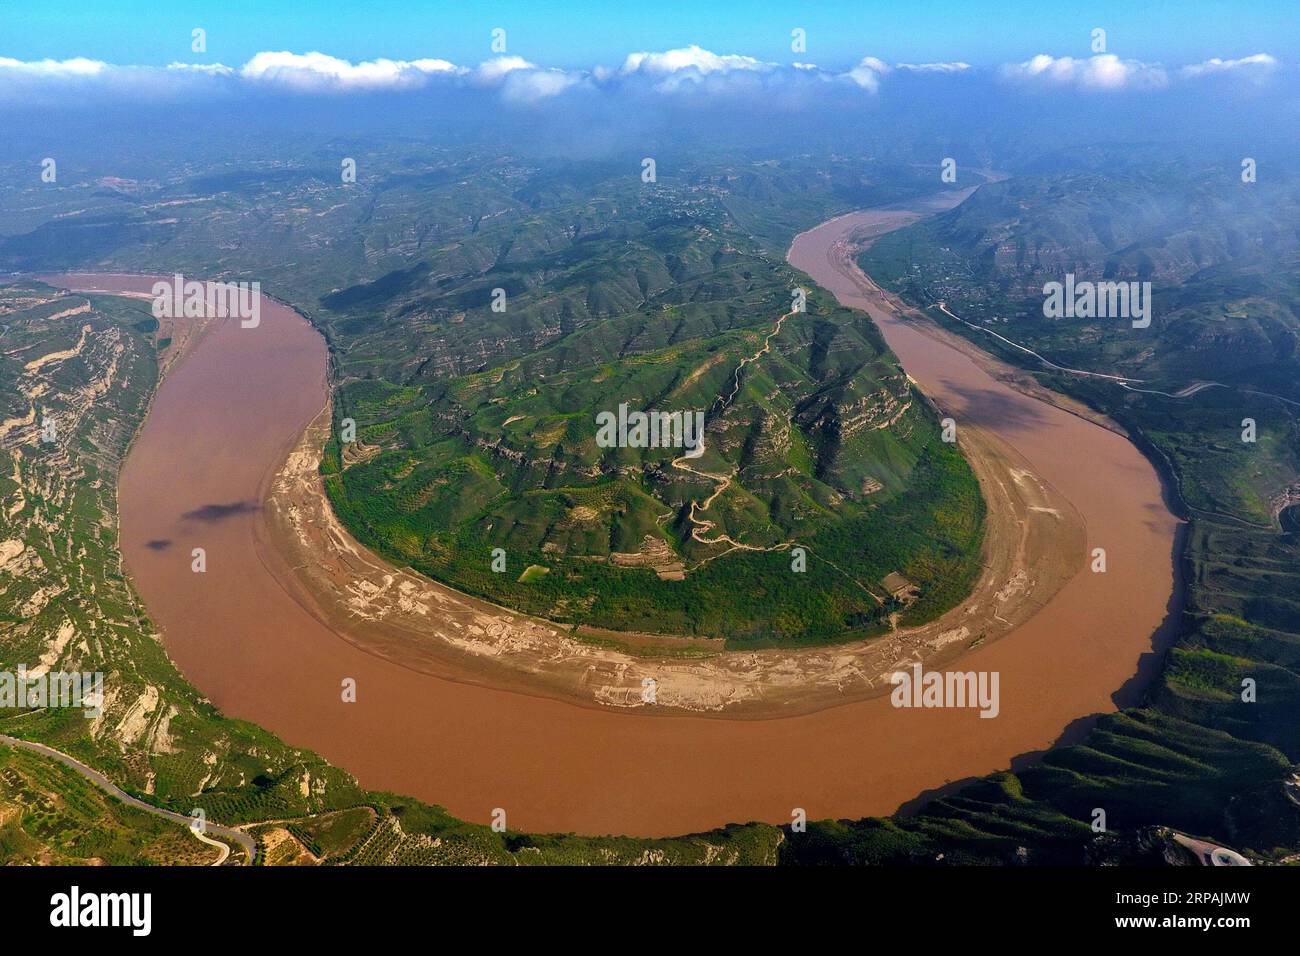 (190513) -- PECHINO, 13 maggio 2019 (Xinhua) -- foto aerea scattata il 6 settembre 2017 mostra lo scenario del fiume giallo nella contea di Yonghe, nella provincia dello Shanxi della Cina settentrionale. L'evento a tema dello Shanxi Day, che si è tenuto nell'ambito della mostra internazionale di orticoltura di Pechino, ha avuto inizio a Pechino il 12 maggio. Lo Shanxi Garden mette in mostra il suo impegno nell'ecologia e nel rimboschimento, nonché il suo concetto di sviluppo verde all'expo in corso. Non facendo più affidamento principalmente sulla sua industria carboniera per la crescita, Shanxi si è impegnata a sviluppare energia pulita e altre industrie emergenti per trovare un equilibrio Foto Stock